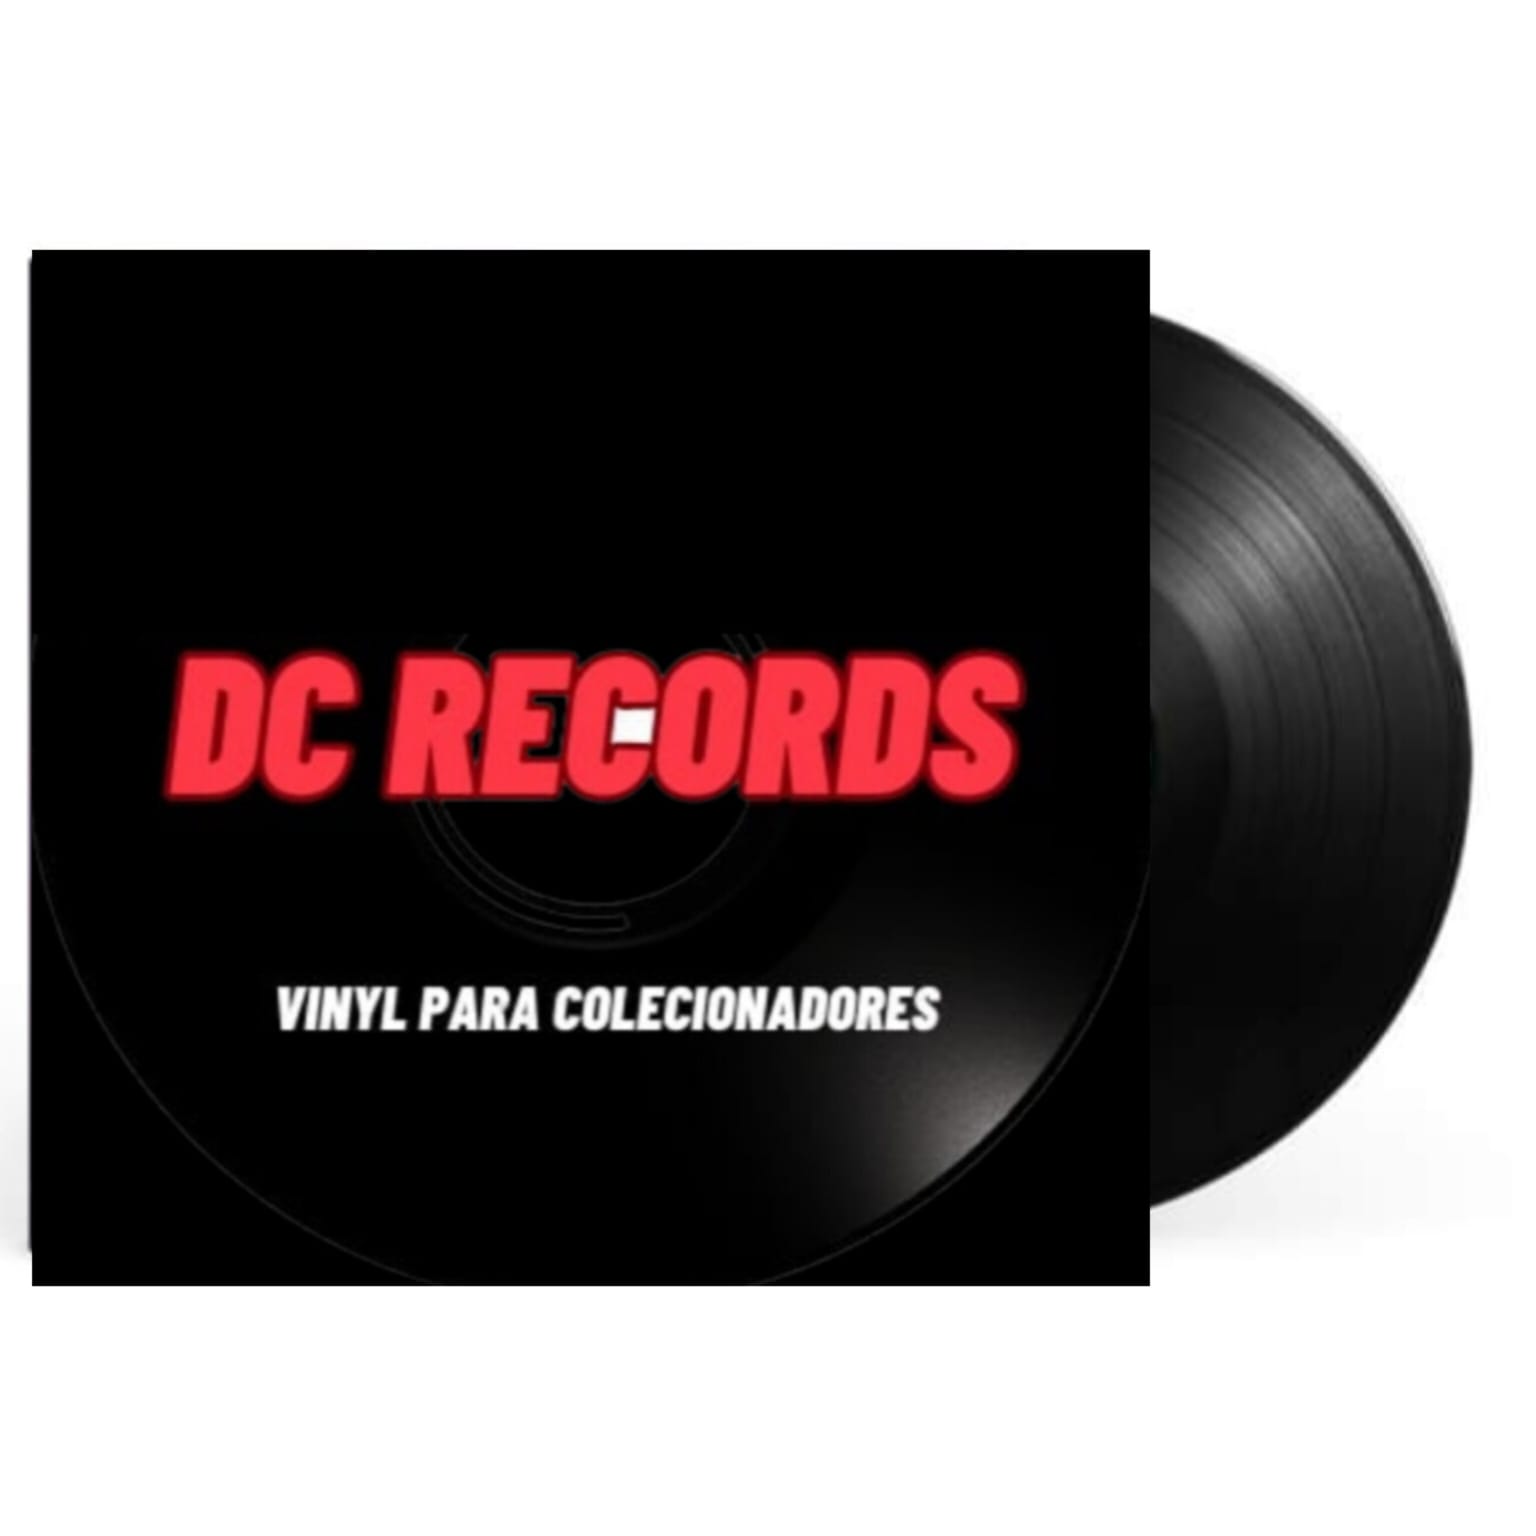 D.C RECORDS